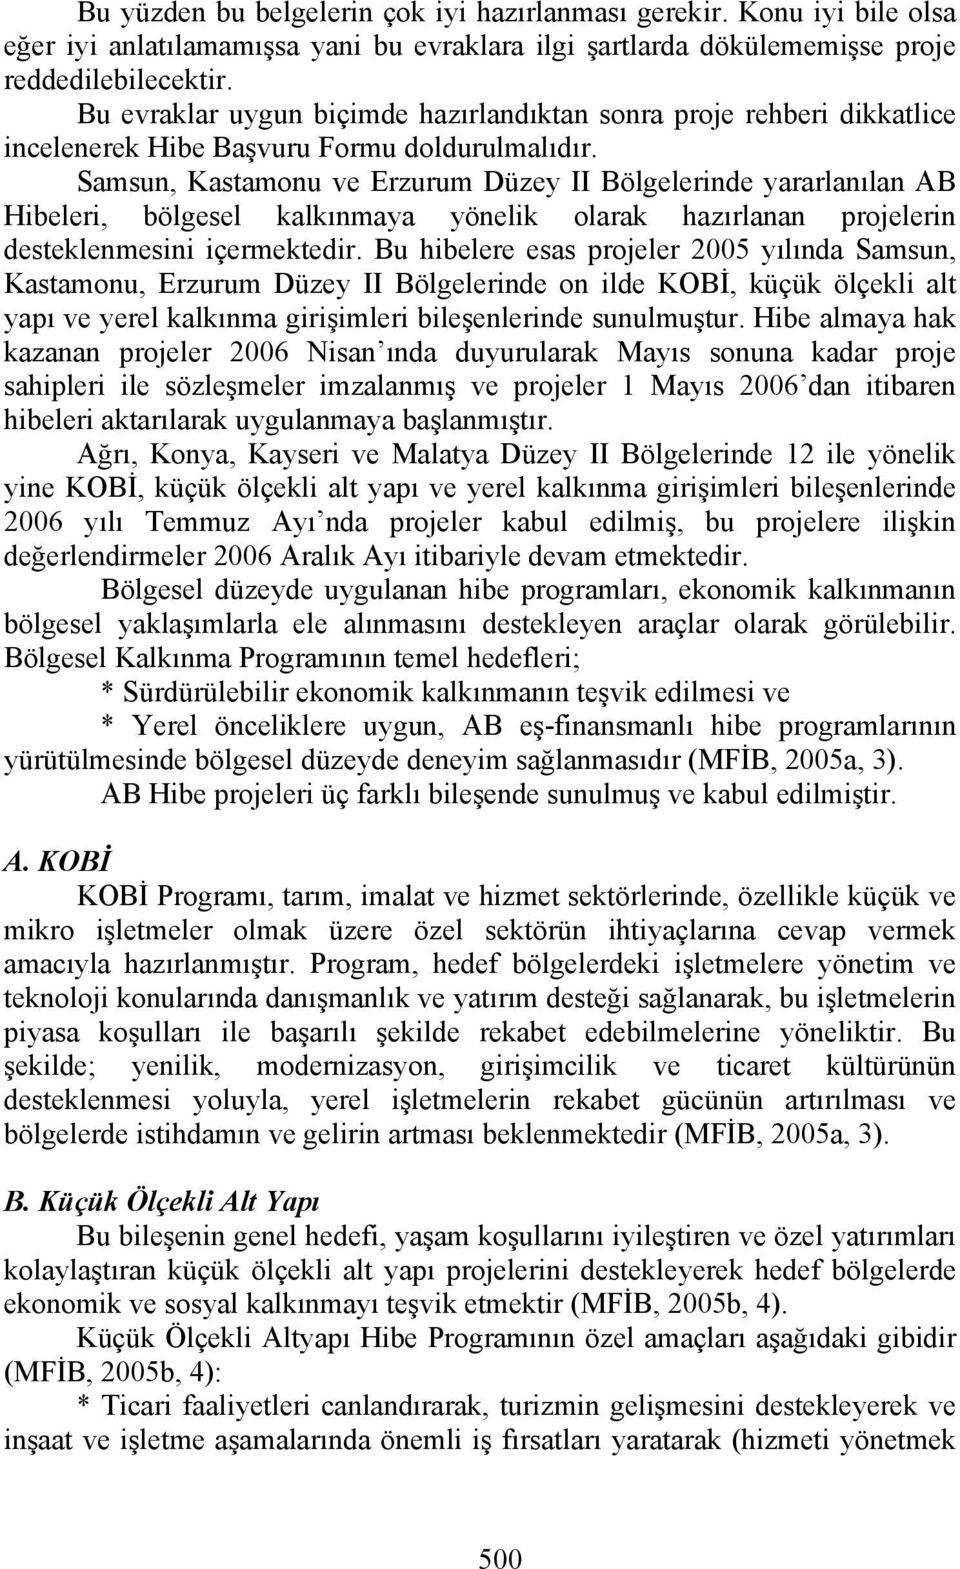 Samsun, Kastamonu ve Erzurum Düzey II Bölgelerinde yararlanılan AB Hibeleri, bölgesel kalkınmaya yönelik olarak hazırlanan projelerin desteklenmesini içermektedir.